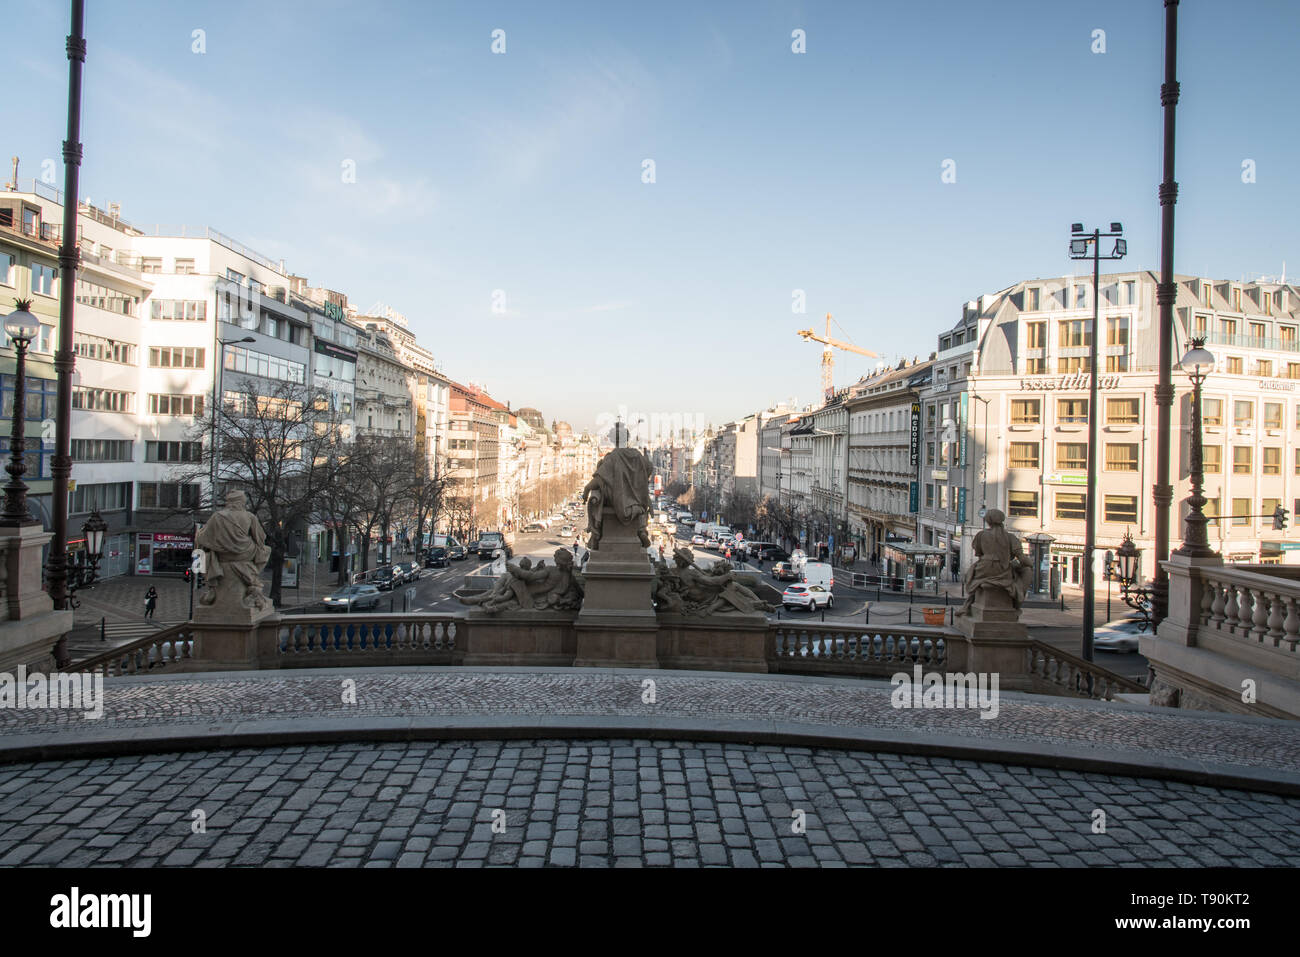 Vaclavske namesti Platz von Narodni muzeum Eingang in Praha City in der Tschechischen Republik während schöner Morgen mit blauem Himmel Stockfoto